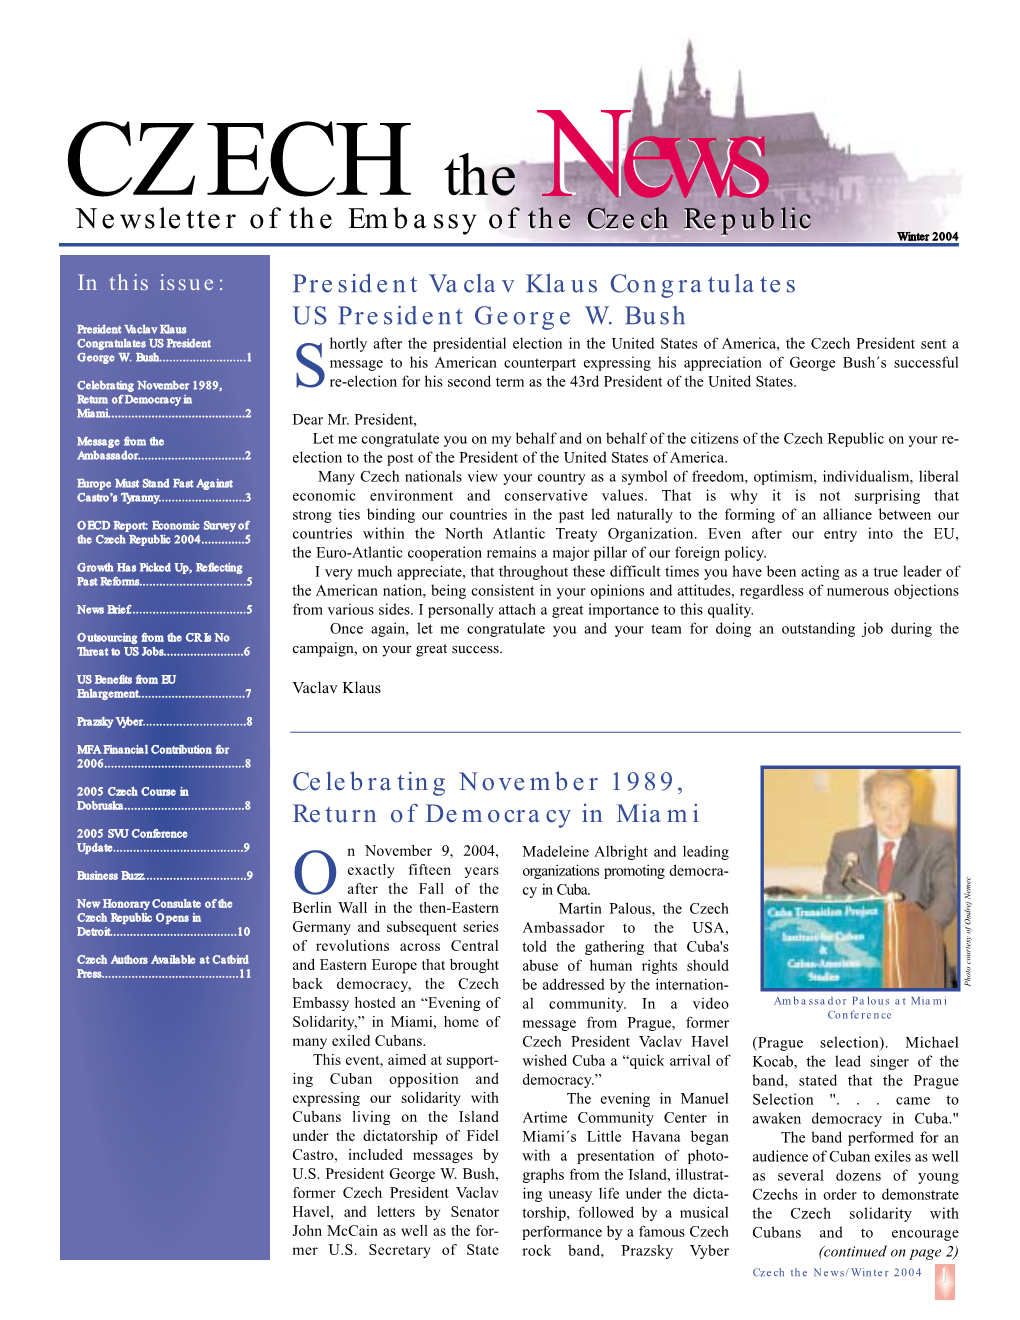 Czech the News Winter/2004